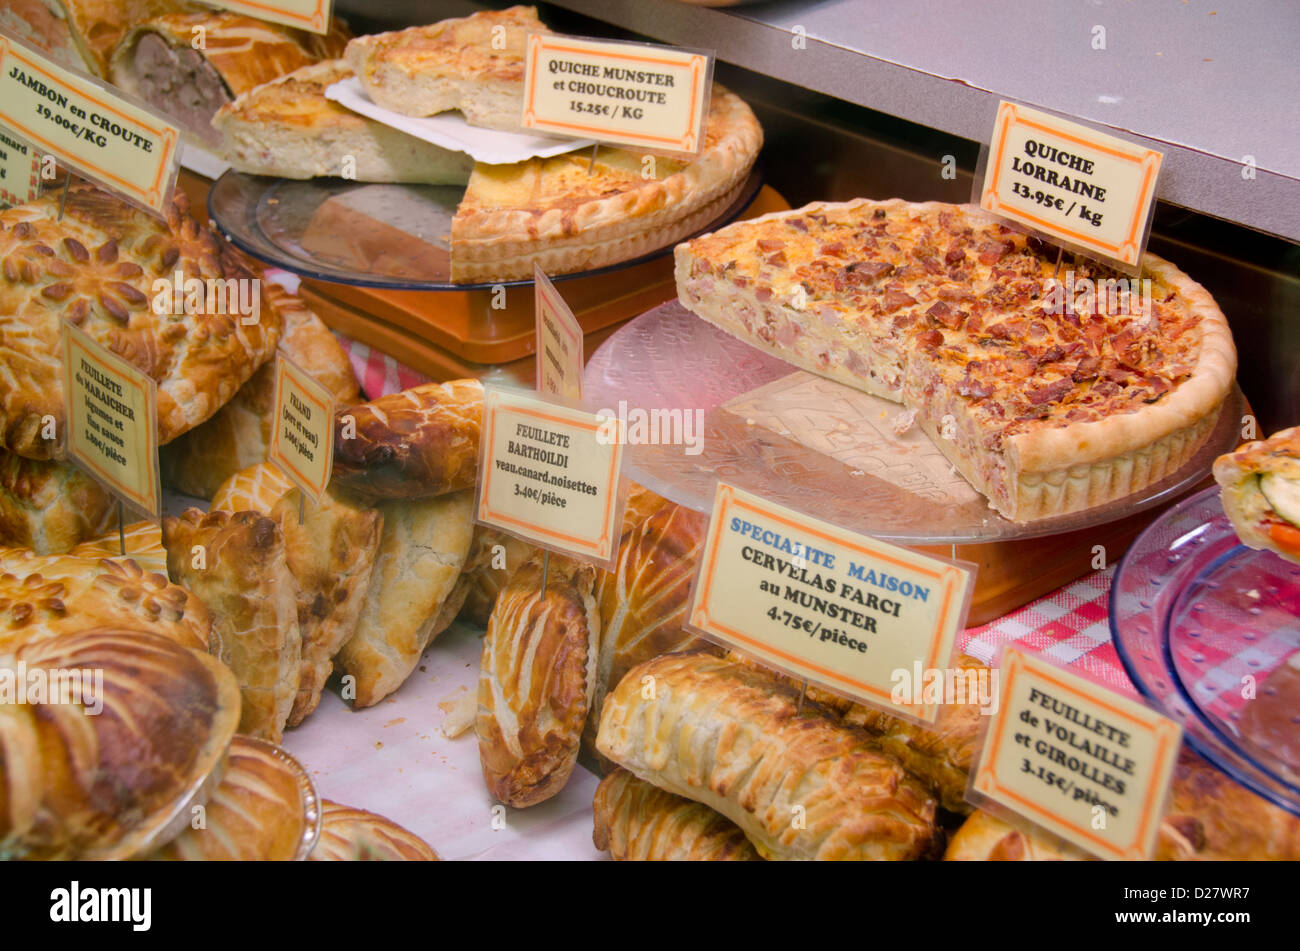 France, Alsace, Colmar. Vitrine de boulangerie avec des spécialités traditionnelles françaises comme la quiche lorraine. Banque D'Images